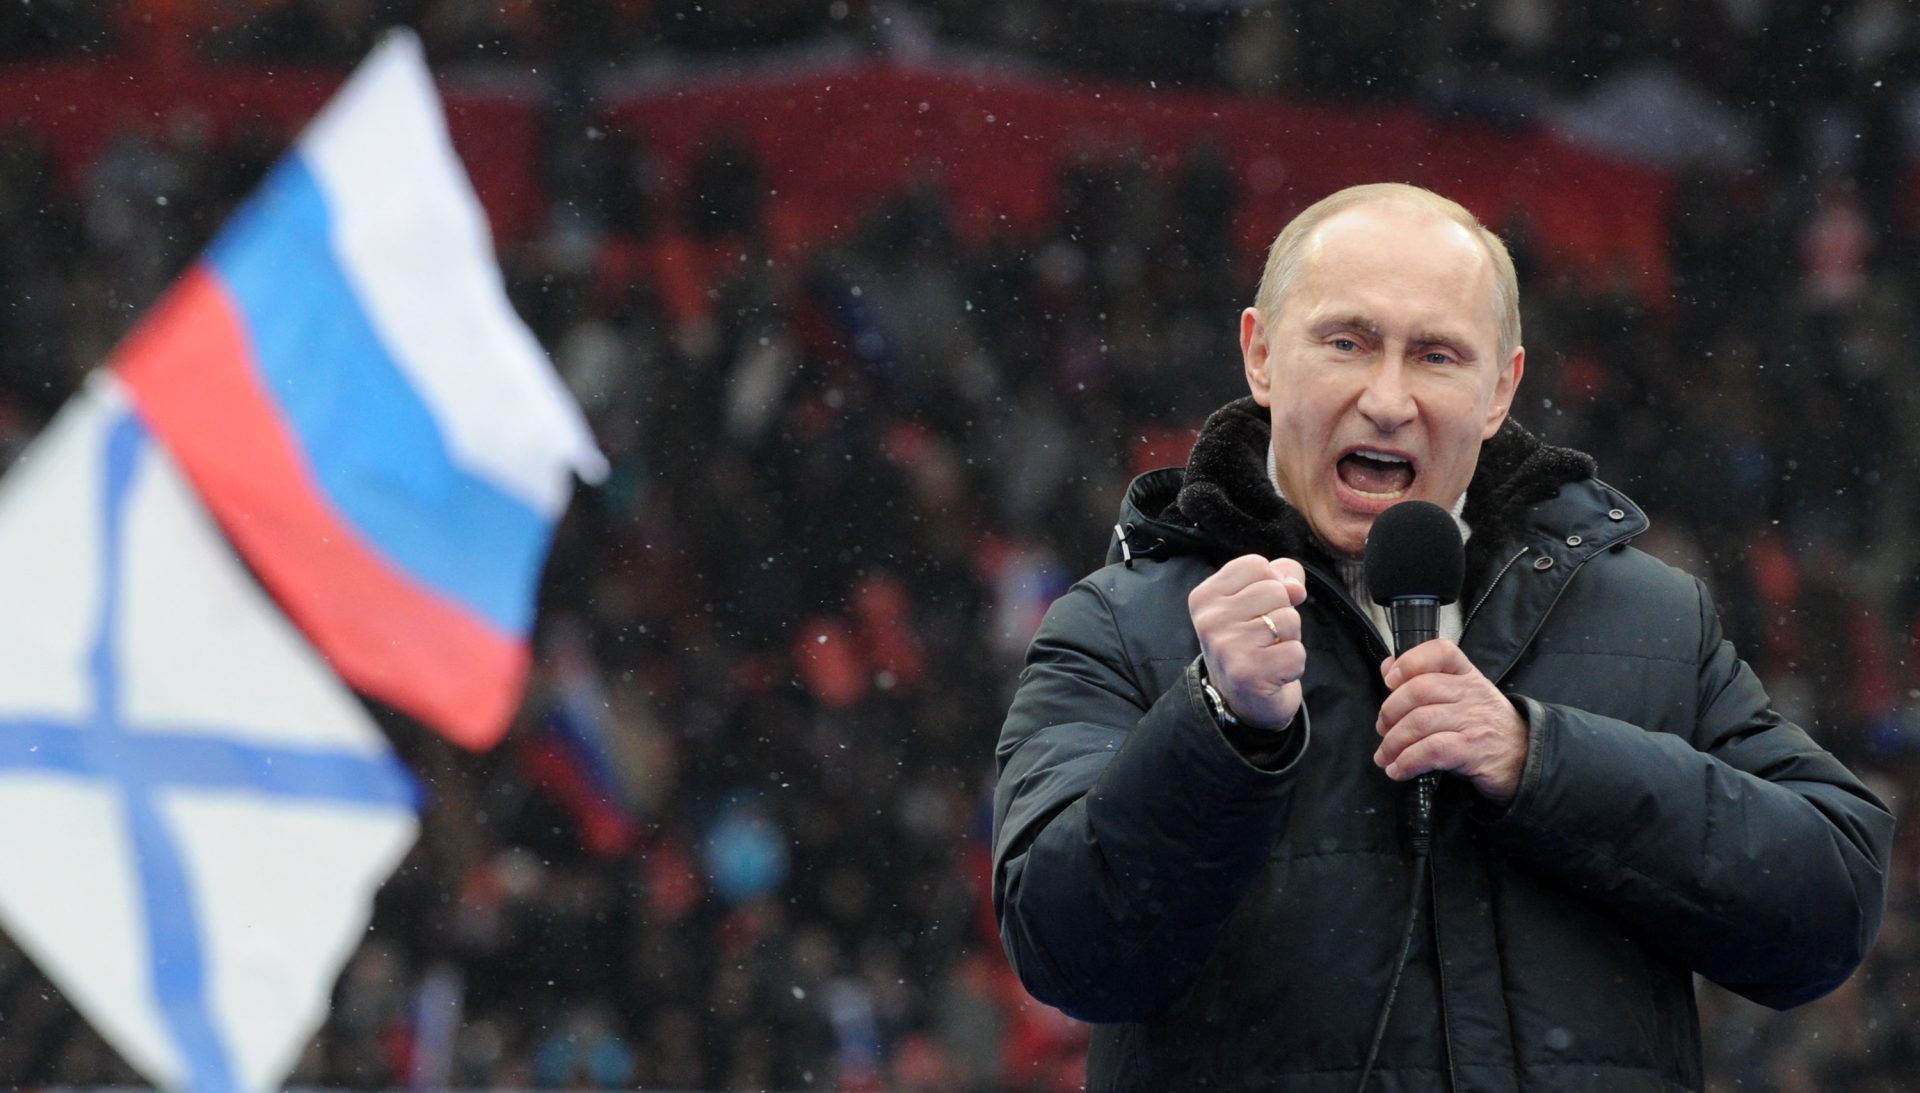 Poutine affronte 3 partisans de la guerre aux élections présidentielles